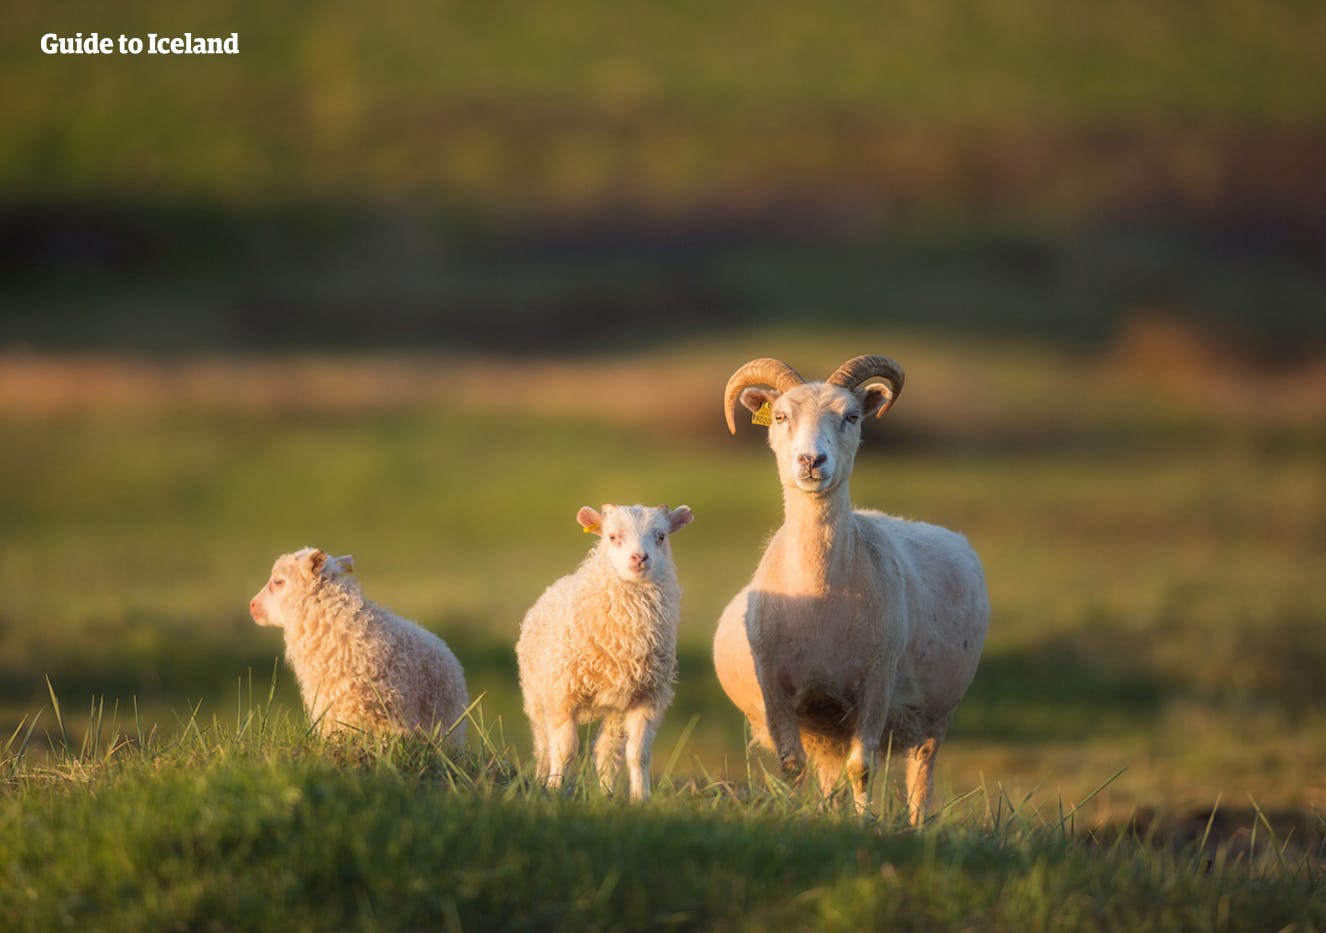 Estate atento a las ovejas mientras viajas por la naturaleza islandesa en tu tour de verano a tu aire.